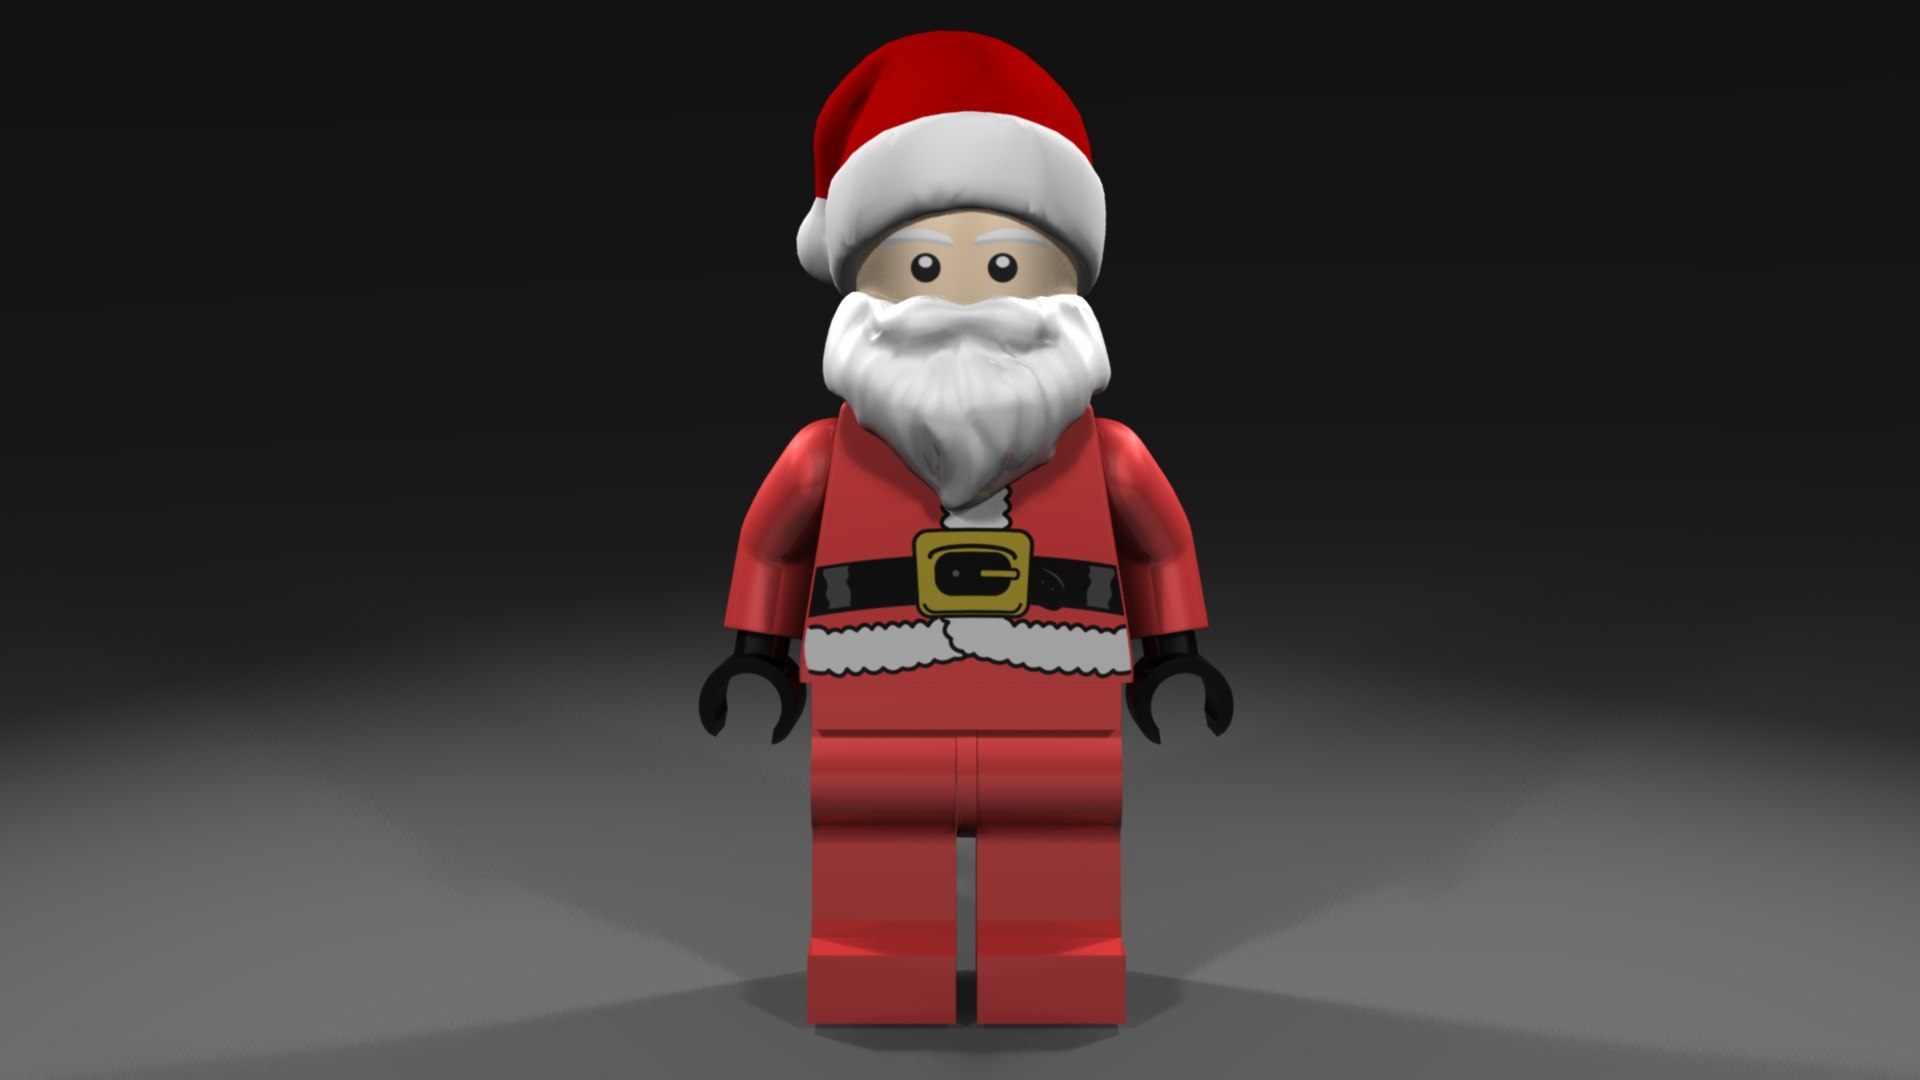 Ông già Noel Lego đã trở về với phiên bản 3D, giờ đây bạn có thể trang trí cho mình một bộ sưu tập ông già Noel độc đáo. Hãy xem hình ảnh để chiêm ngưỡng những chi tiết tinh tế và kỹ năng thực sự của người chơi.